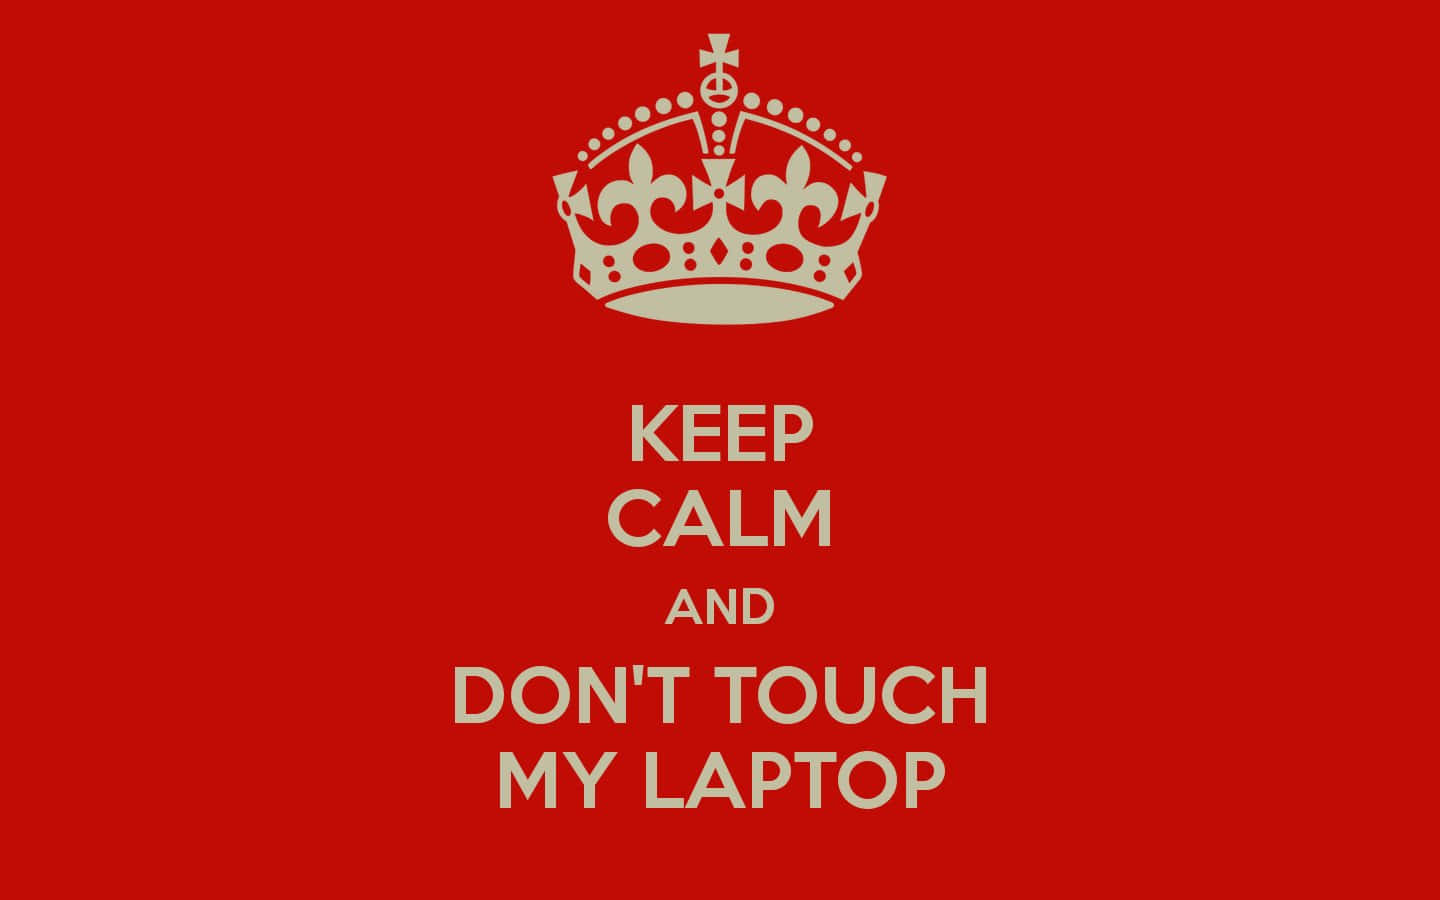 Mantenhaa Calma, Não Toque No Meu Laptop Vermelho. Papel de Parede